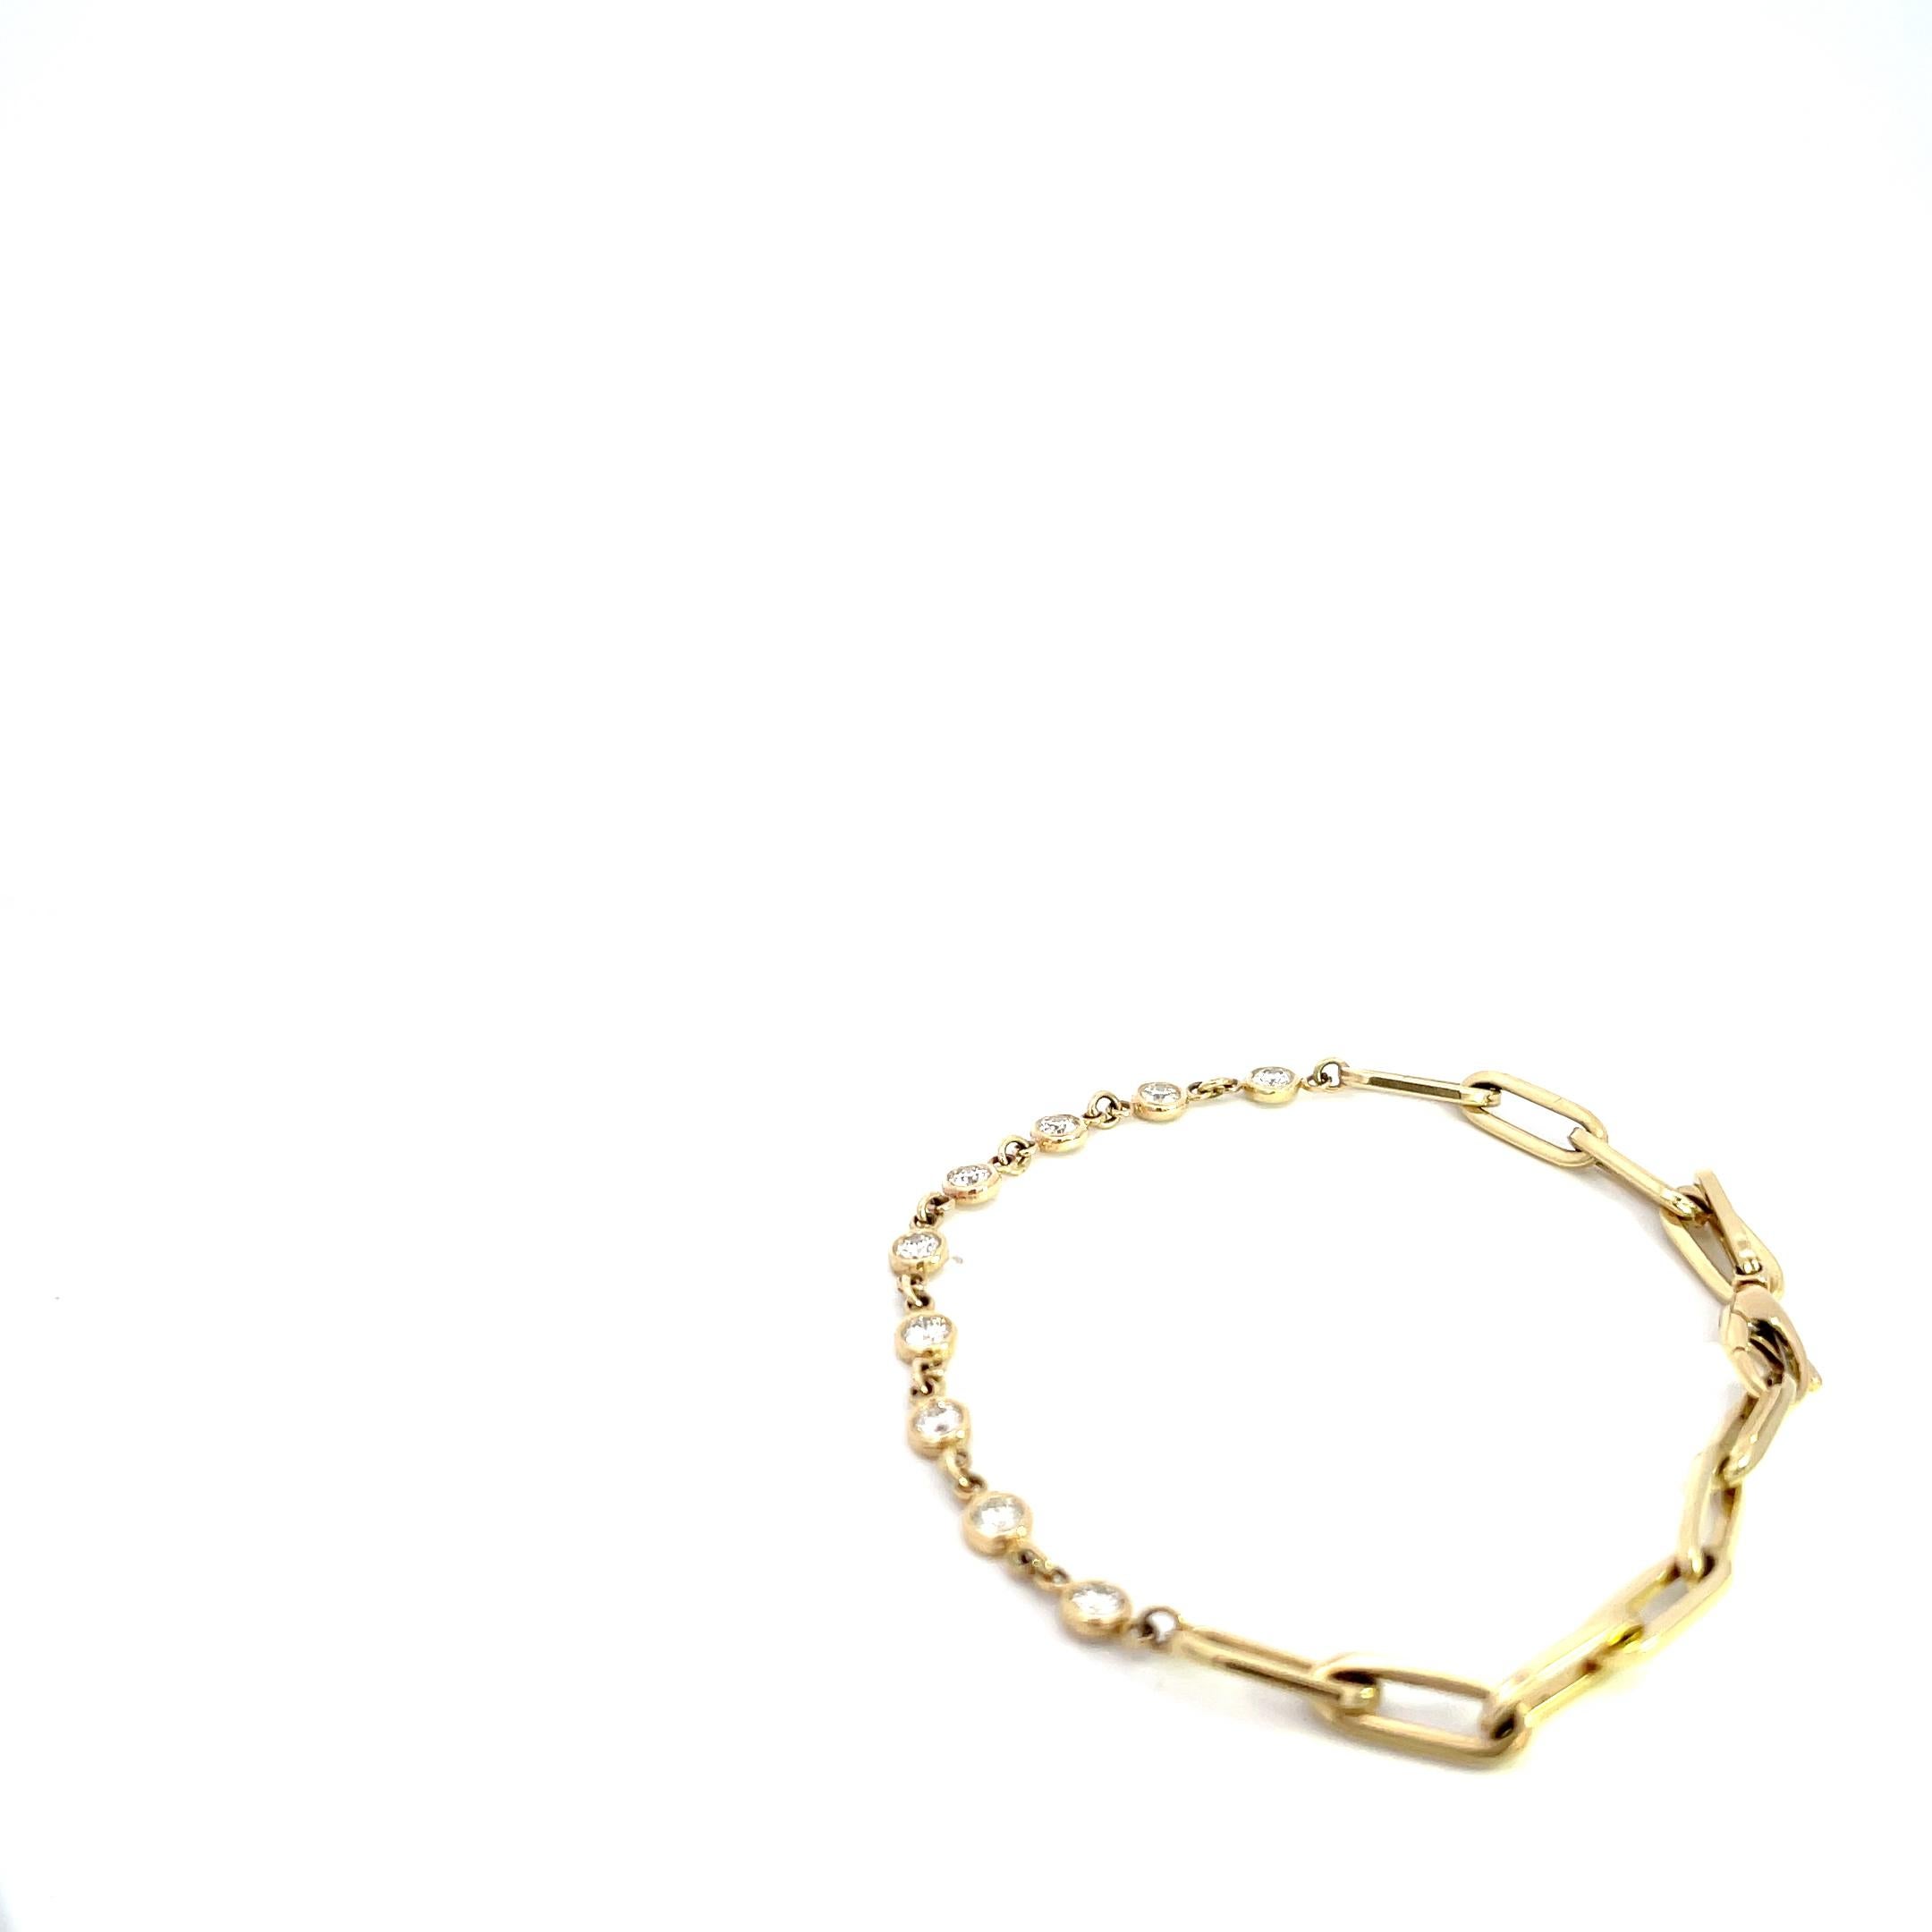 Unser exquisites Armband aus 14 Karat Gelbgold mit 0,86 Karat Diamanten in der Lünette ist der Inbegriff von Eleganz und Raffinesse. Dieses mit viel Liebe zum Detail gefertigte Armband ist ein wahres Meisterwerk, das Ihren Stil auf ein neues Niveau